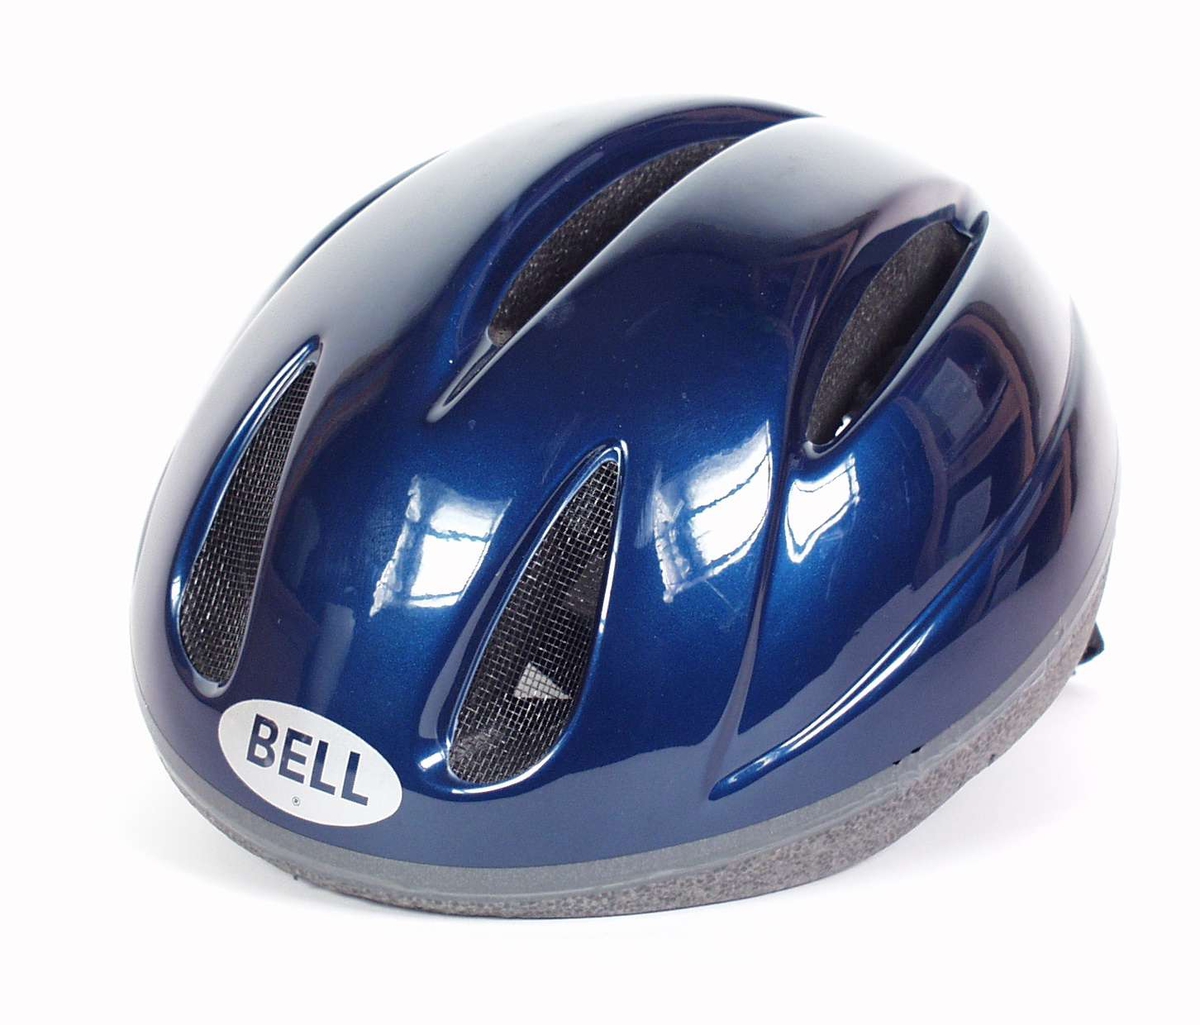 Oval sykkelhjelm med blå metallisk farge og nettingfelt på fronten.